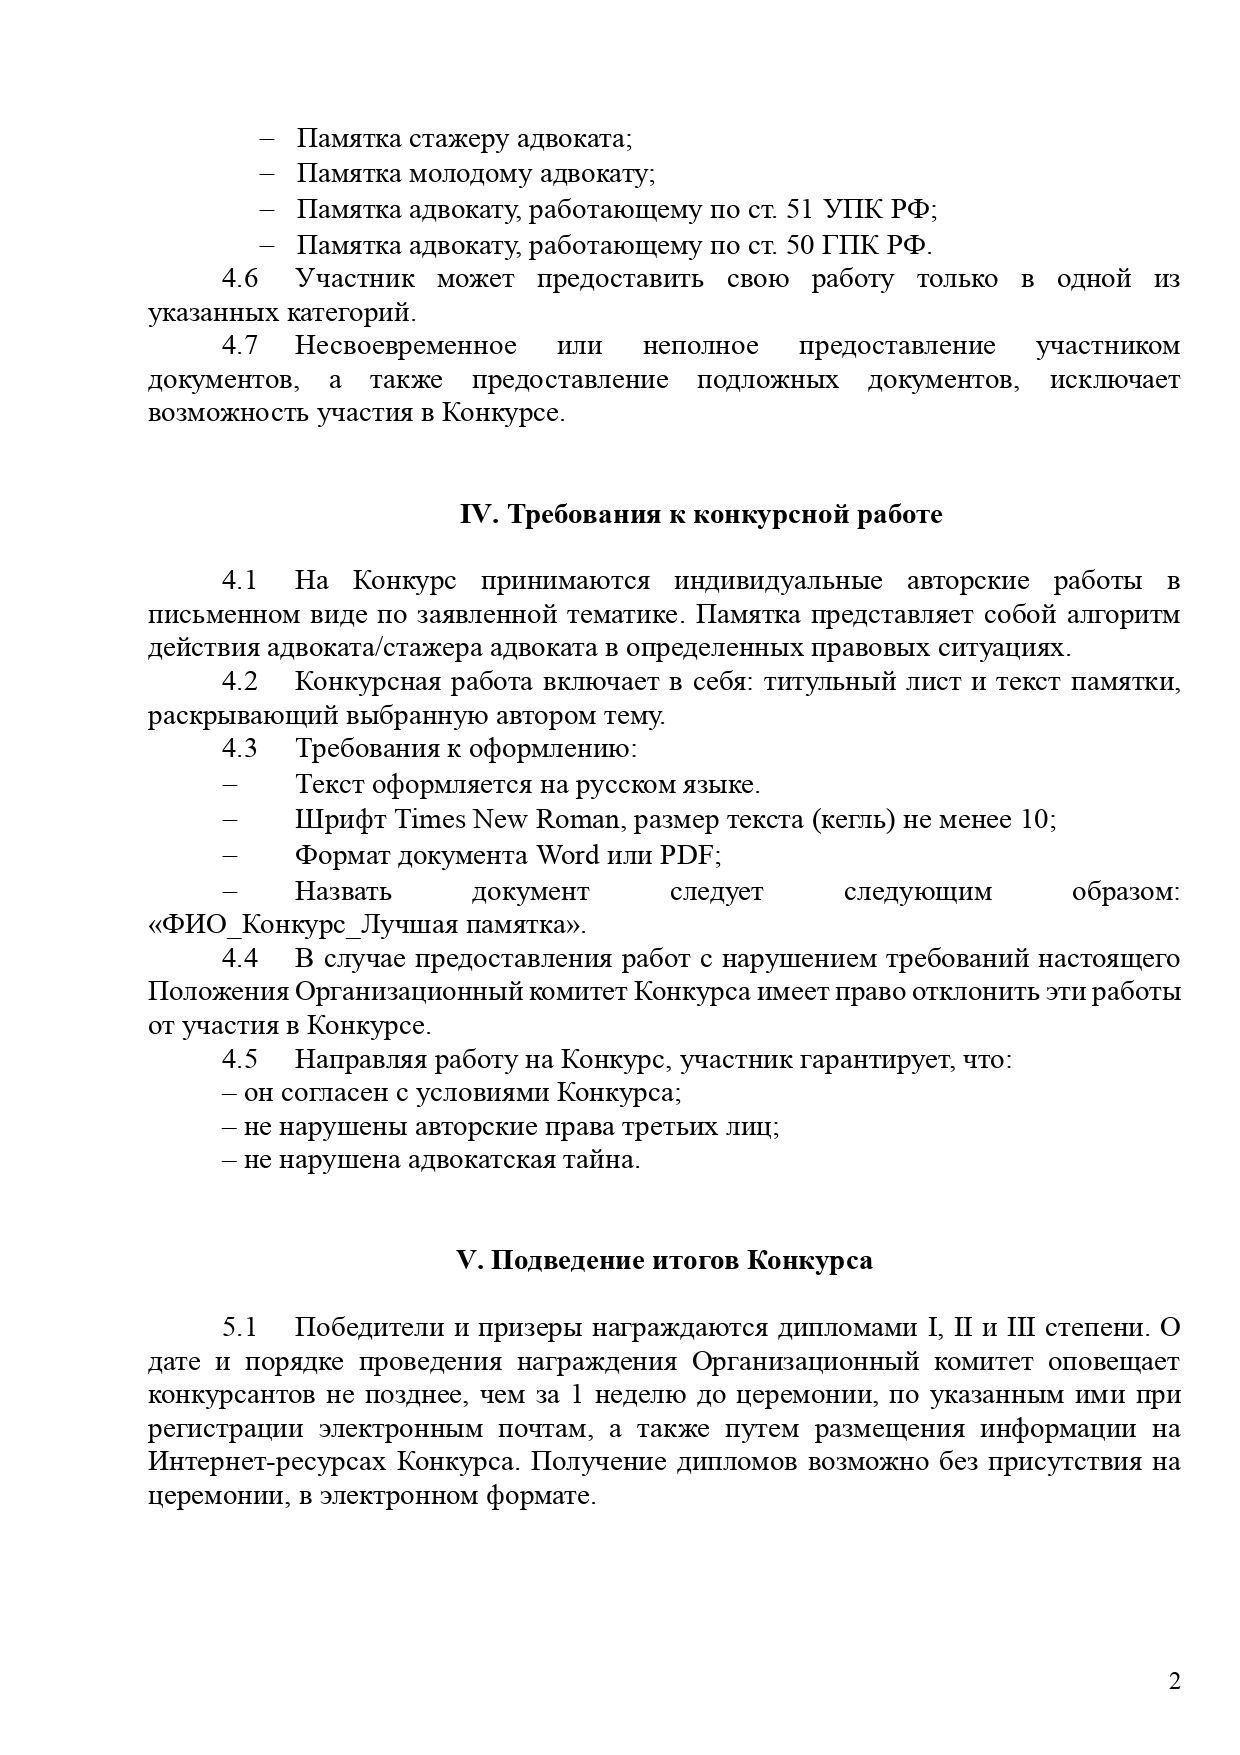 PRILOZhENIE Polozhenie o Vserossijskom konkurse sredi advokatov - Luchshaya pamyatka_page-0002.jpg